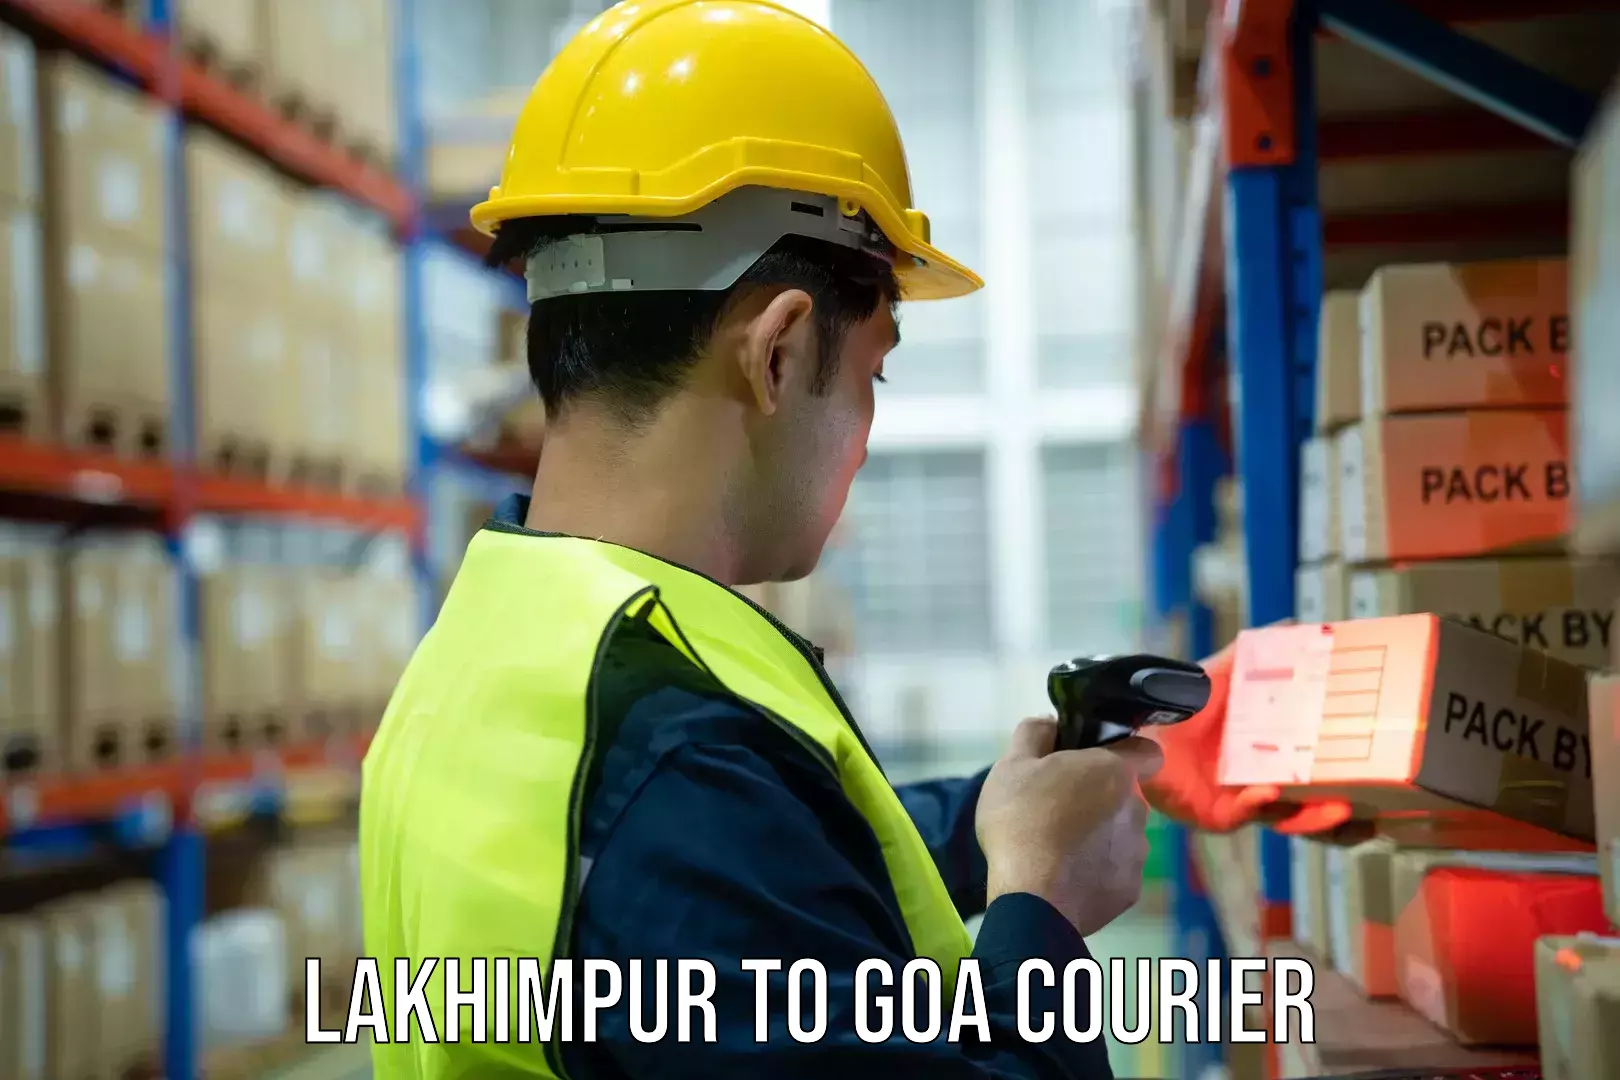 Quality courier partnerships Lakhimpur to Bardez